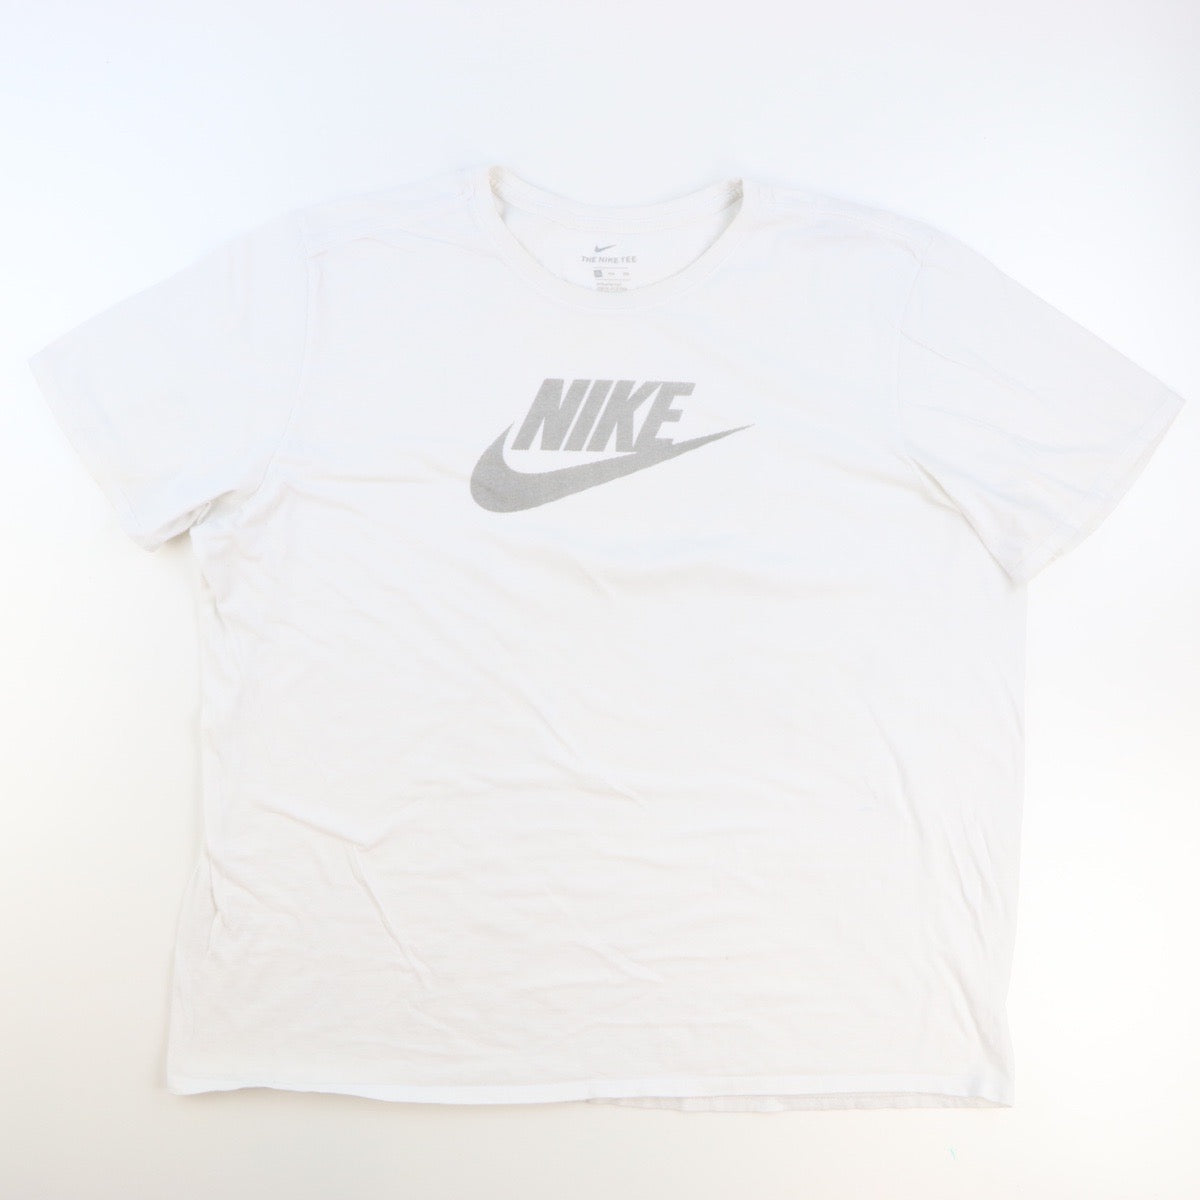 Nike T shirt (L)